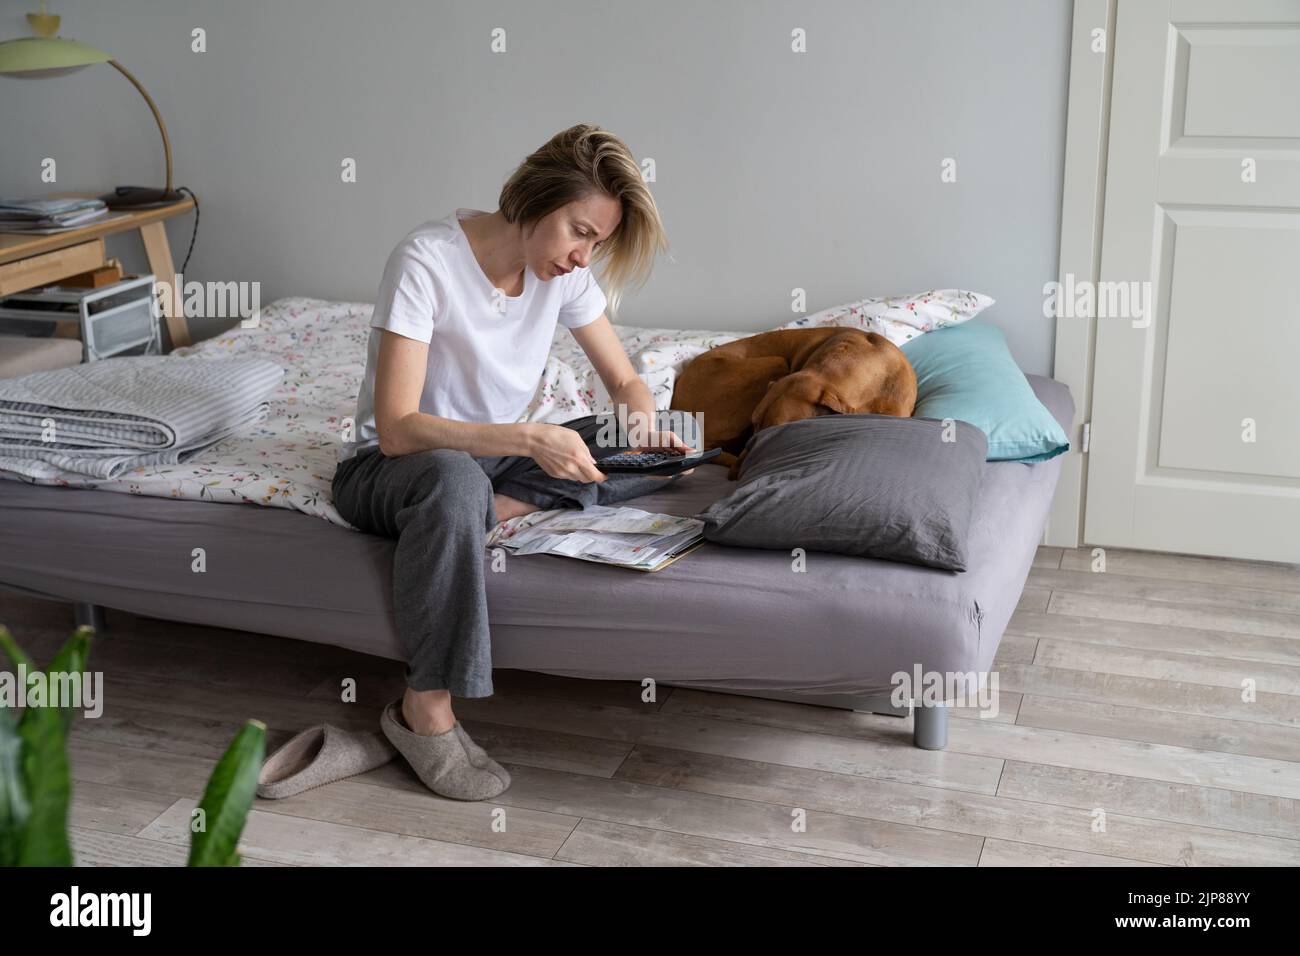 Donna matura concentrata cerca di contare tutte le fatture seduta sul letto vicino al cane addormentato Foto Stock